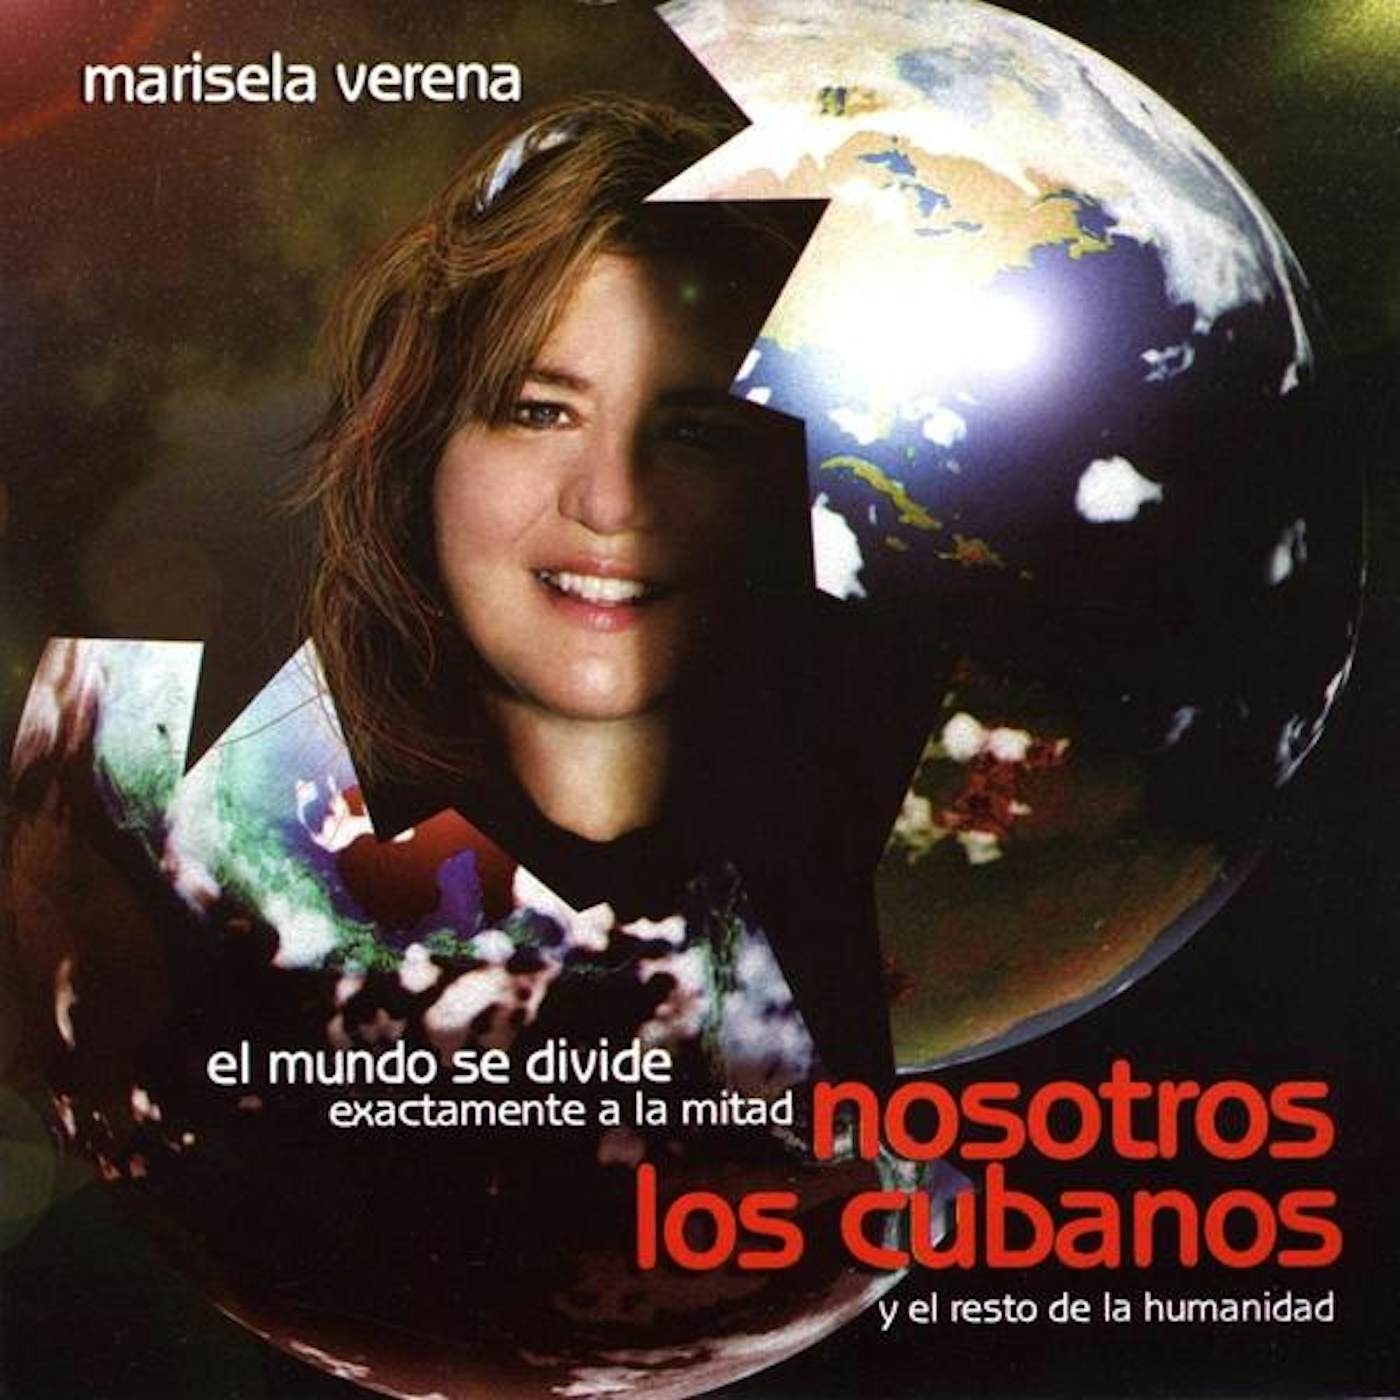 Marisela Verena NOSOTROS LOS CUBANOS CD